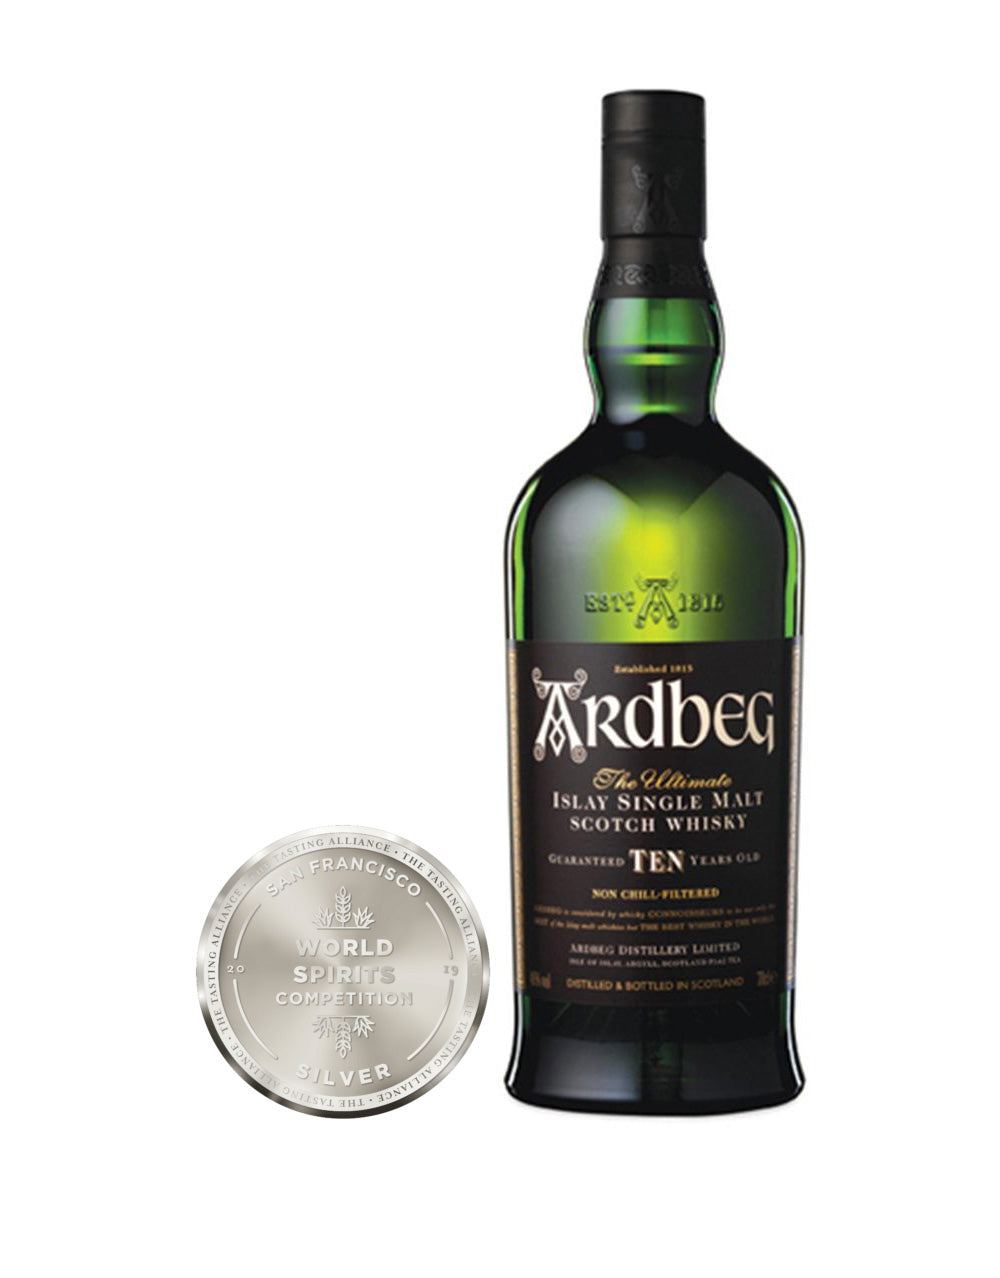 Ardbeg 10-Year-Old Single Malt Scotch Whisky bottle and award